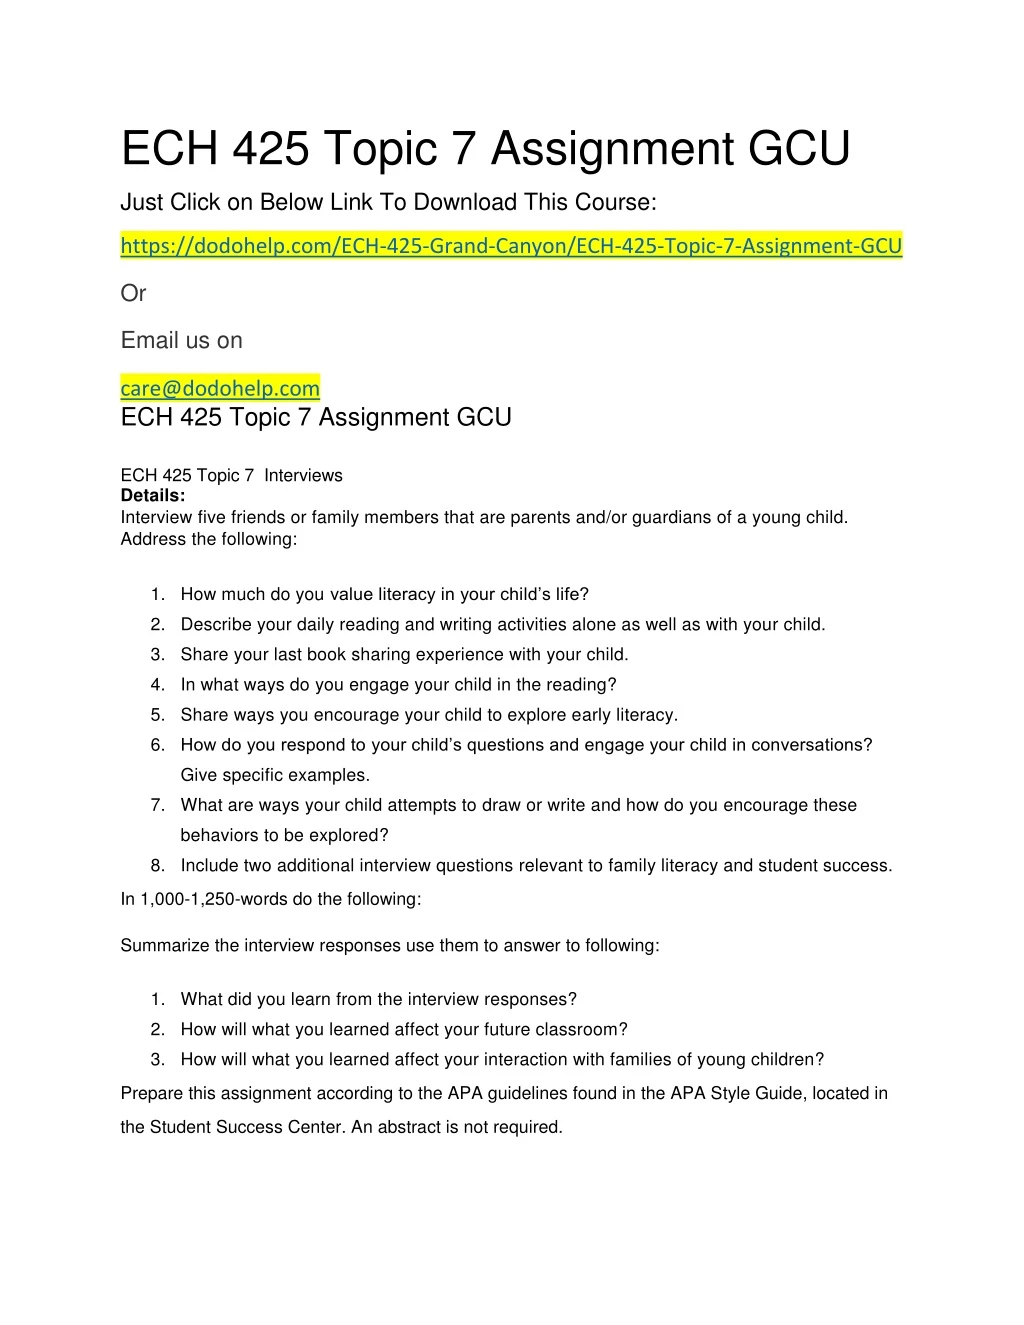 ech 425 topic 7 assignment gcu